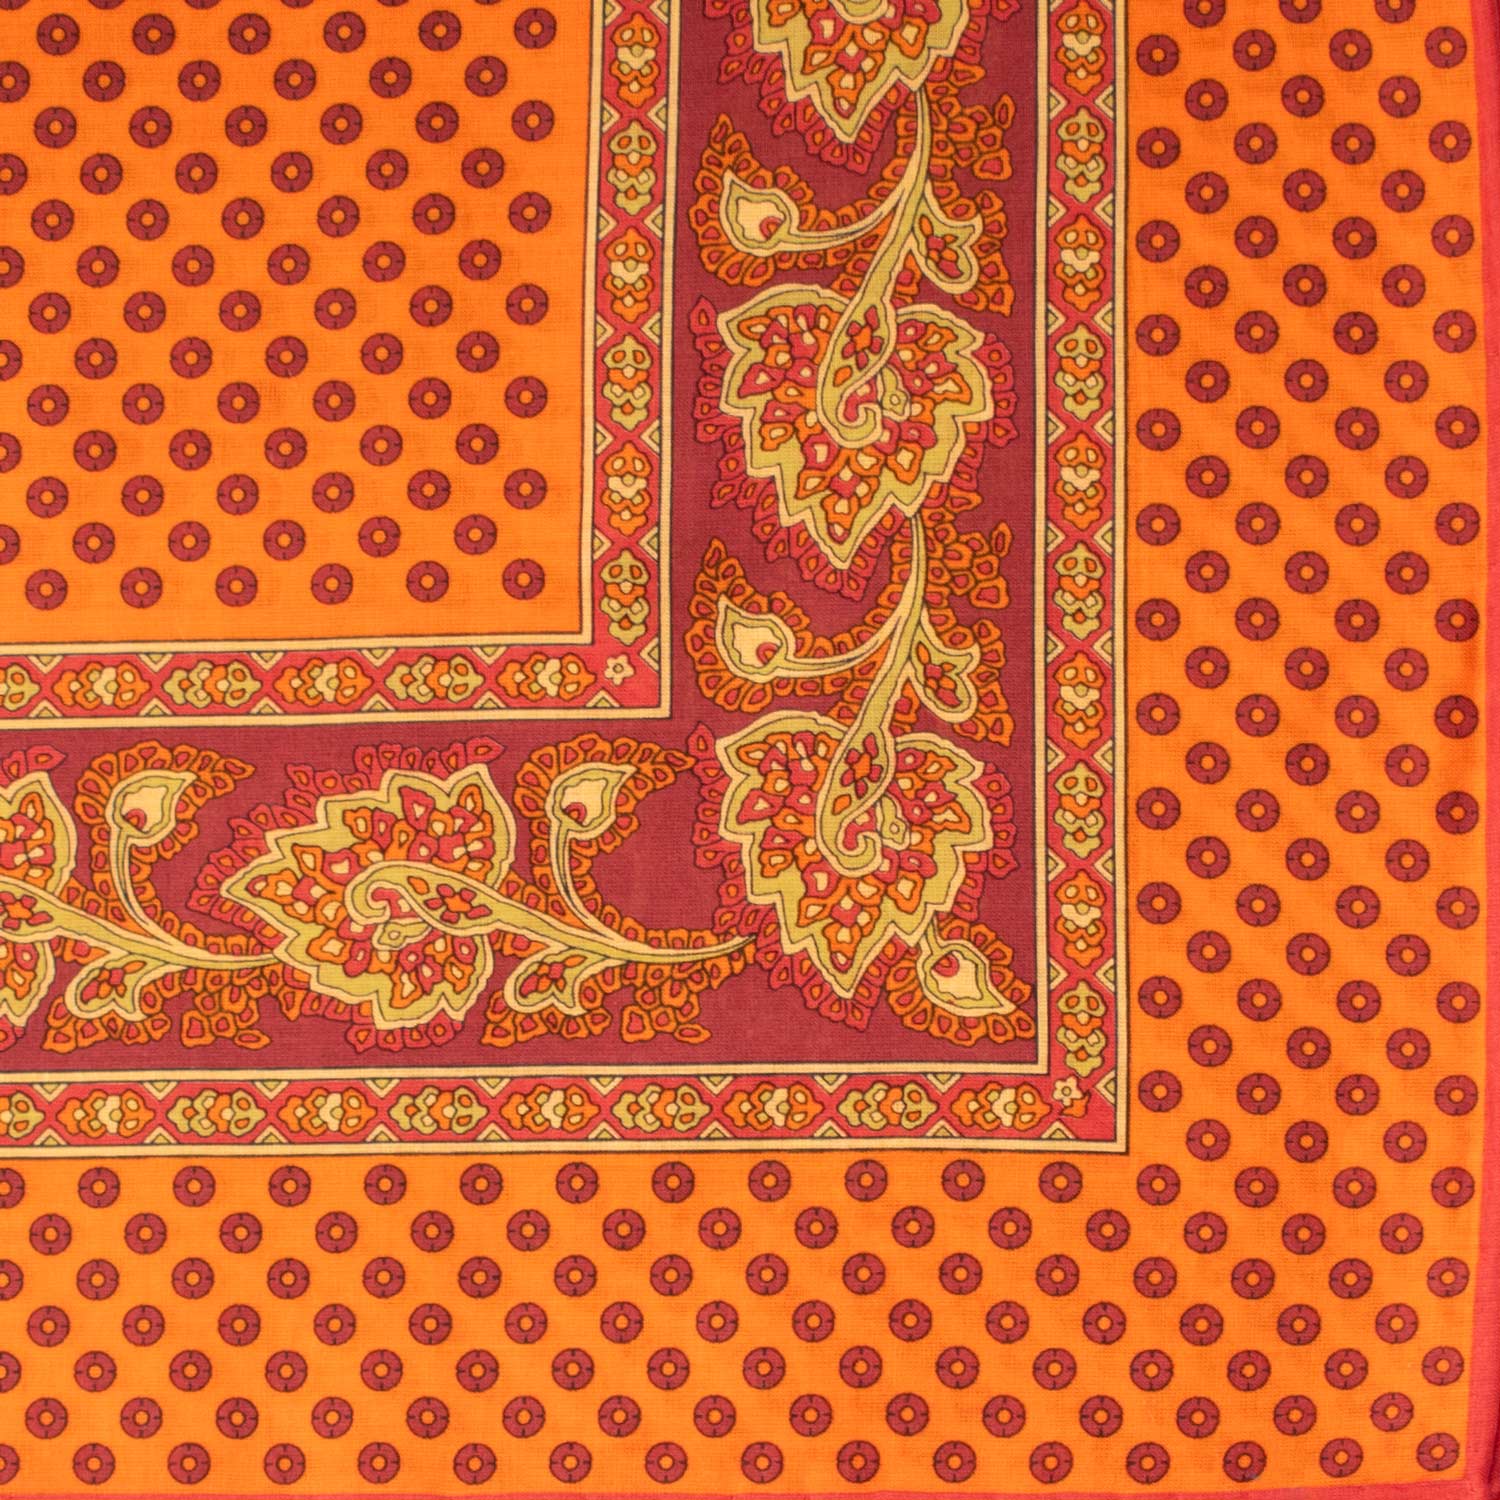 Fazzoletto da Taschino Vintage di Cotone Arancione Fantasia Multicolor POCV610 Made in Italy Graffeo Cravatte